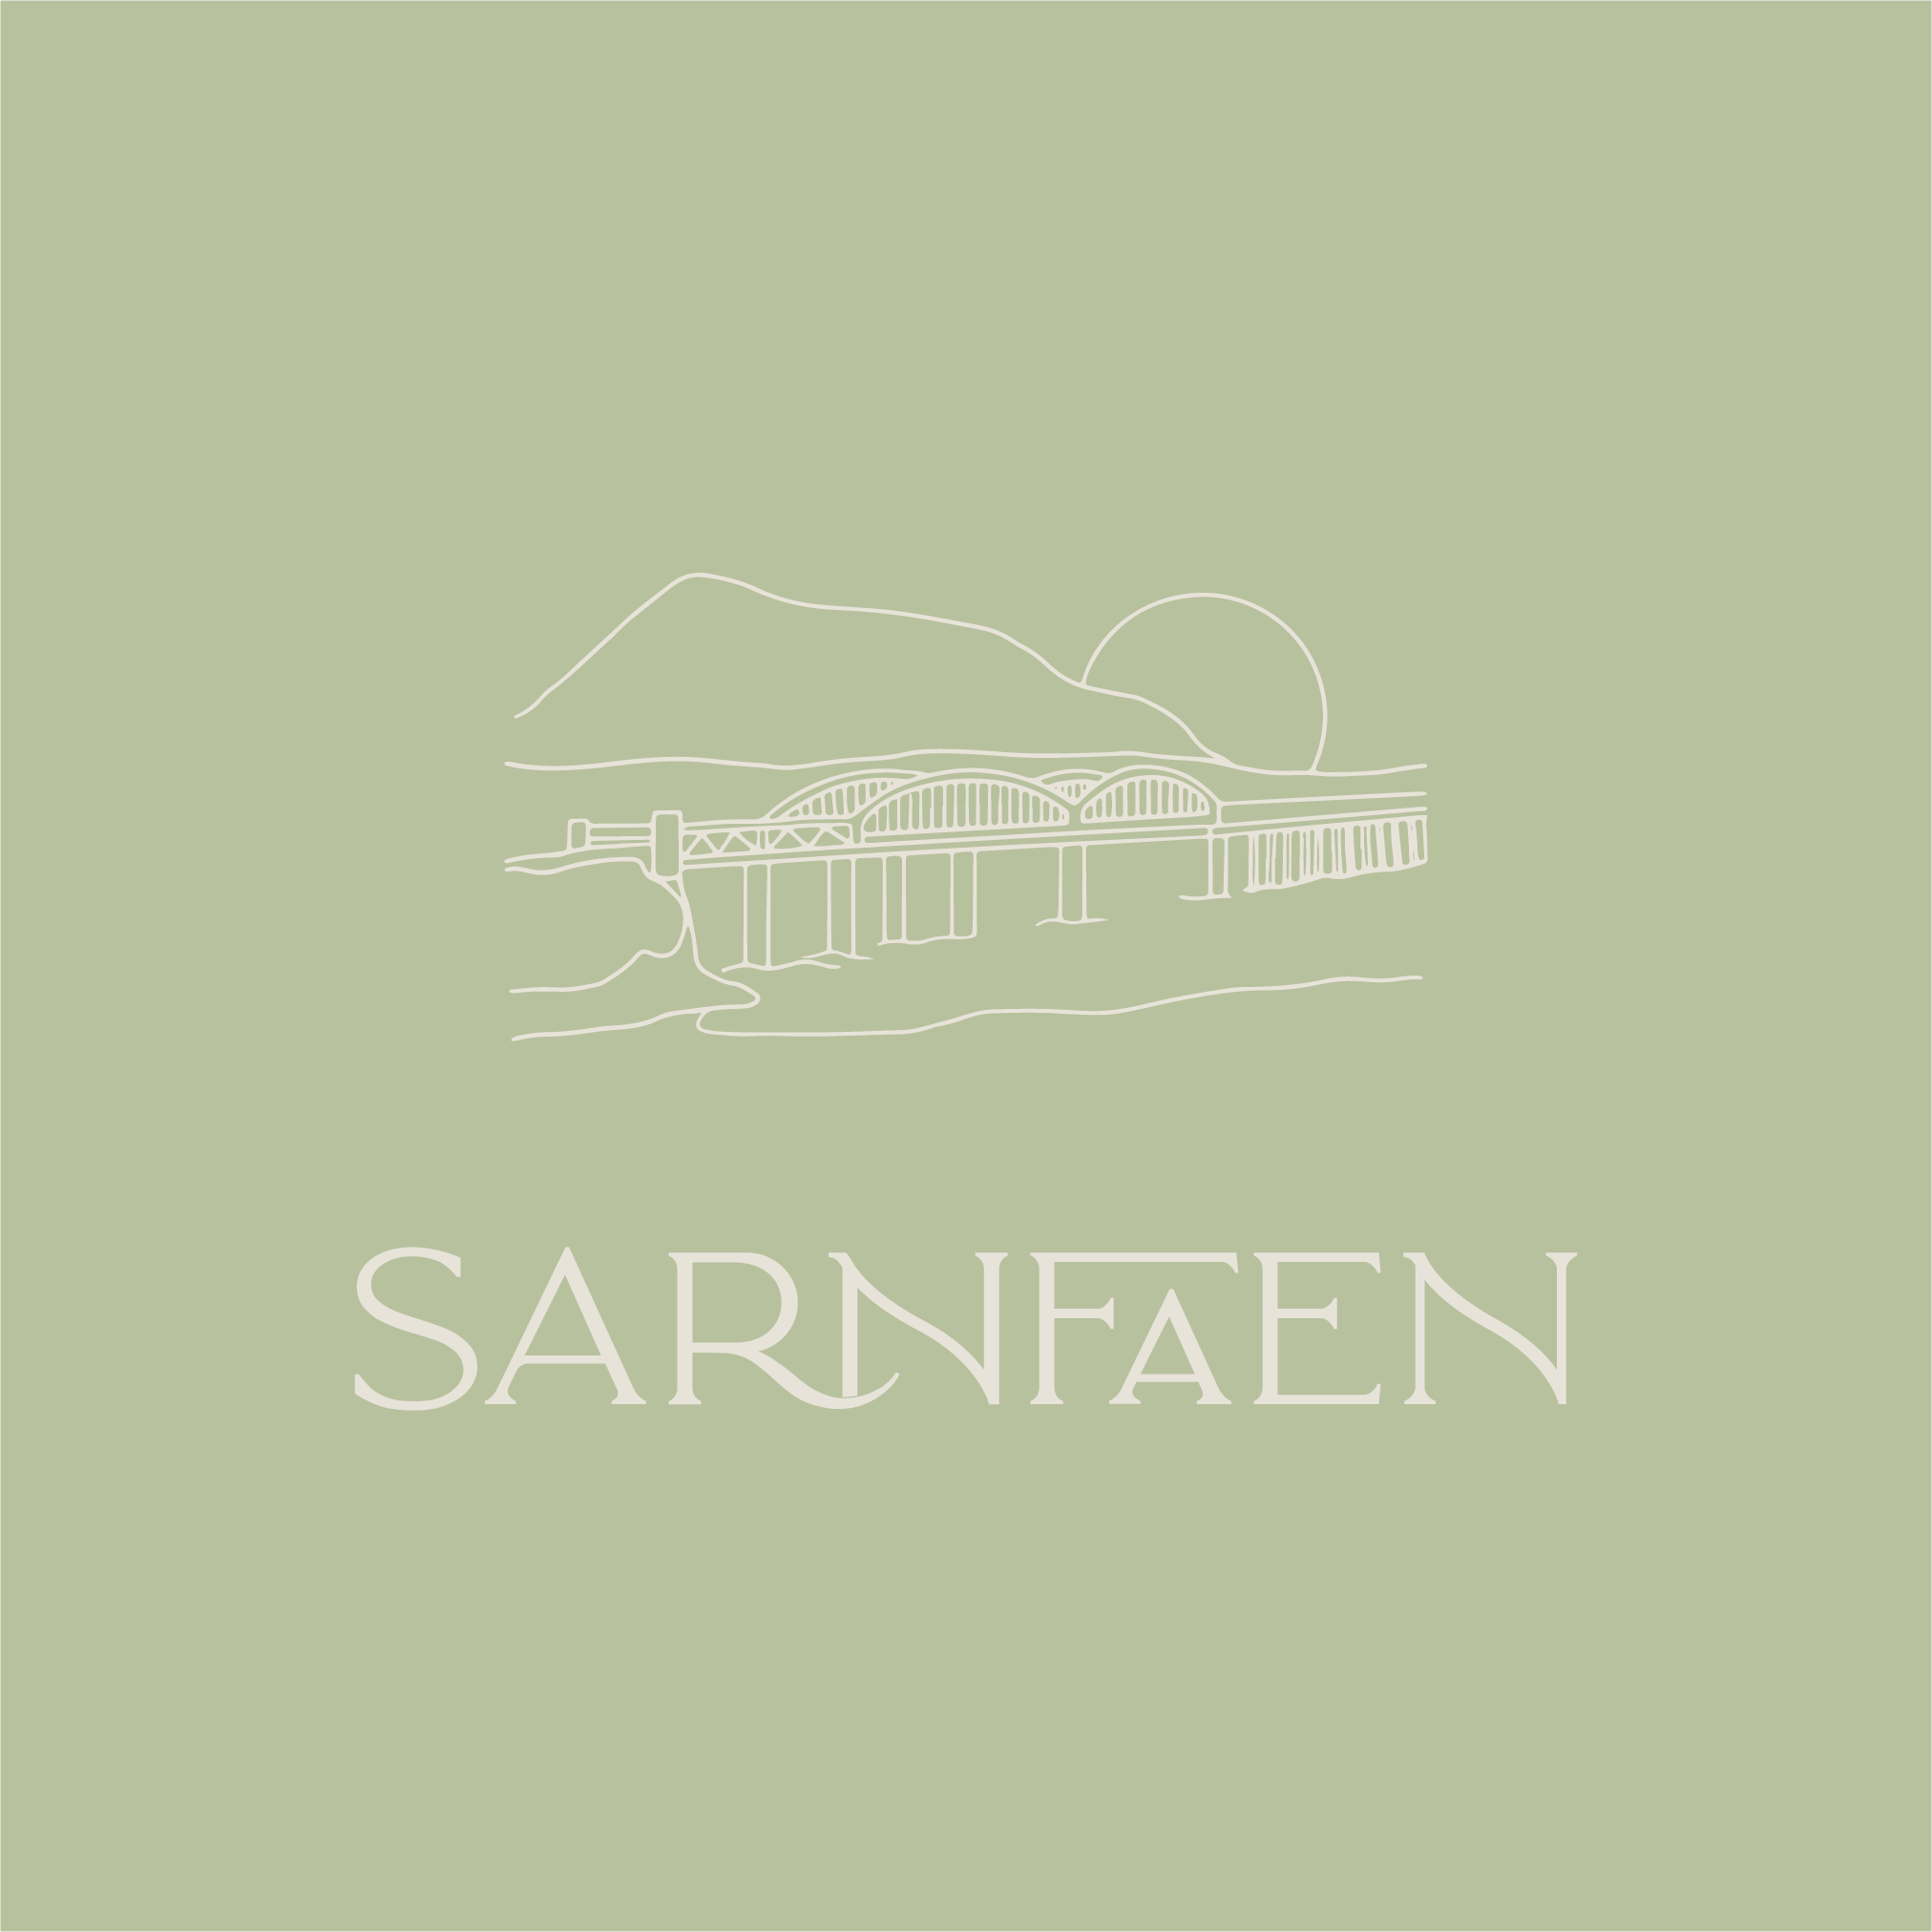 Sarnfaen logo